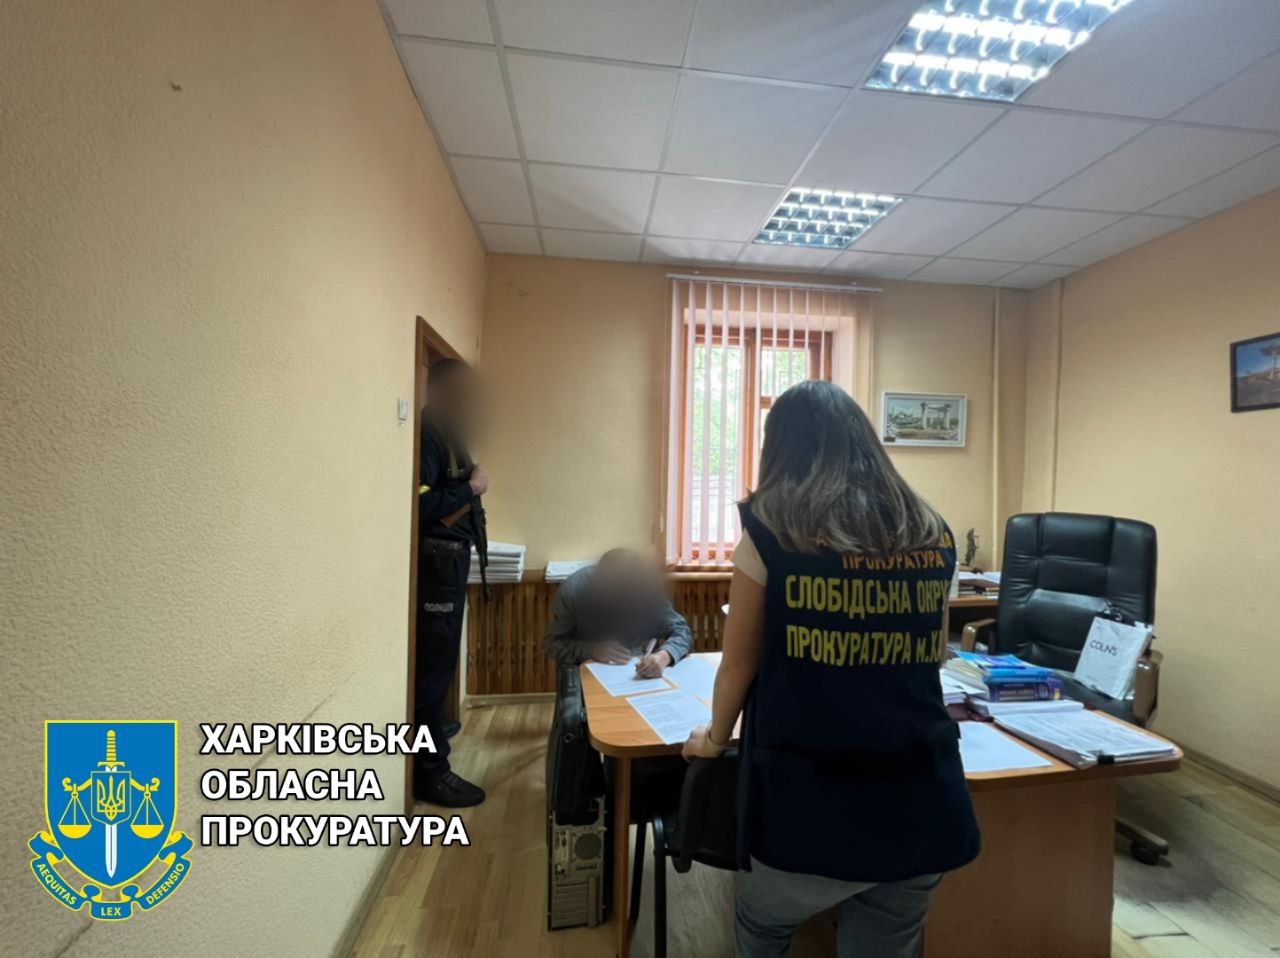 Мародер ограбил автозаправку в Харькове